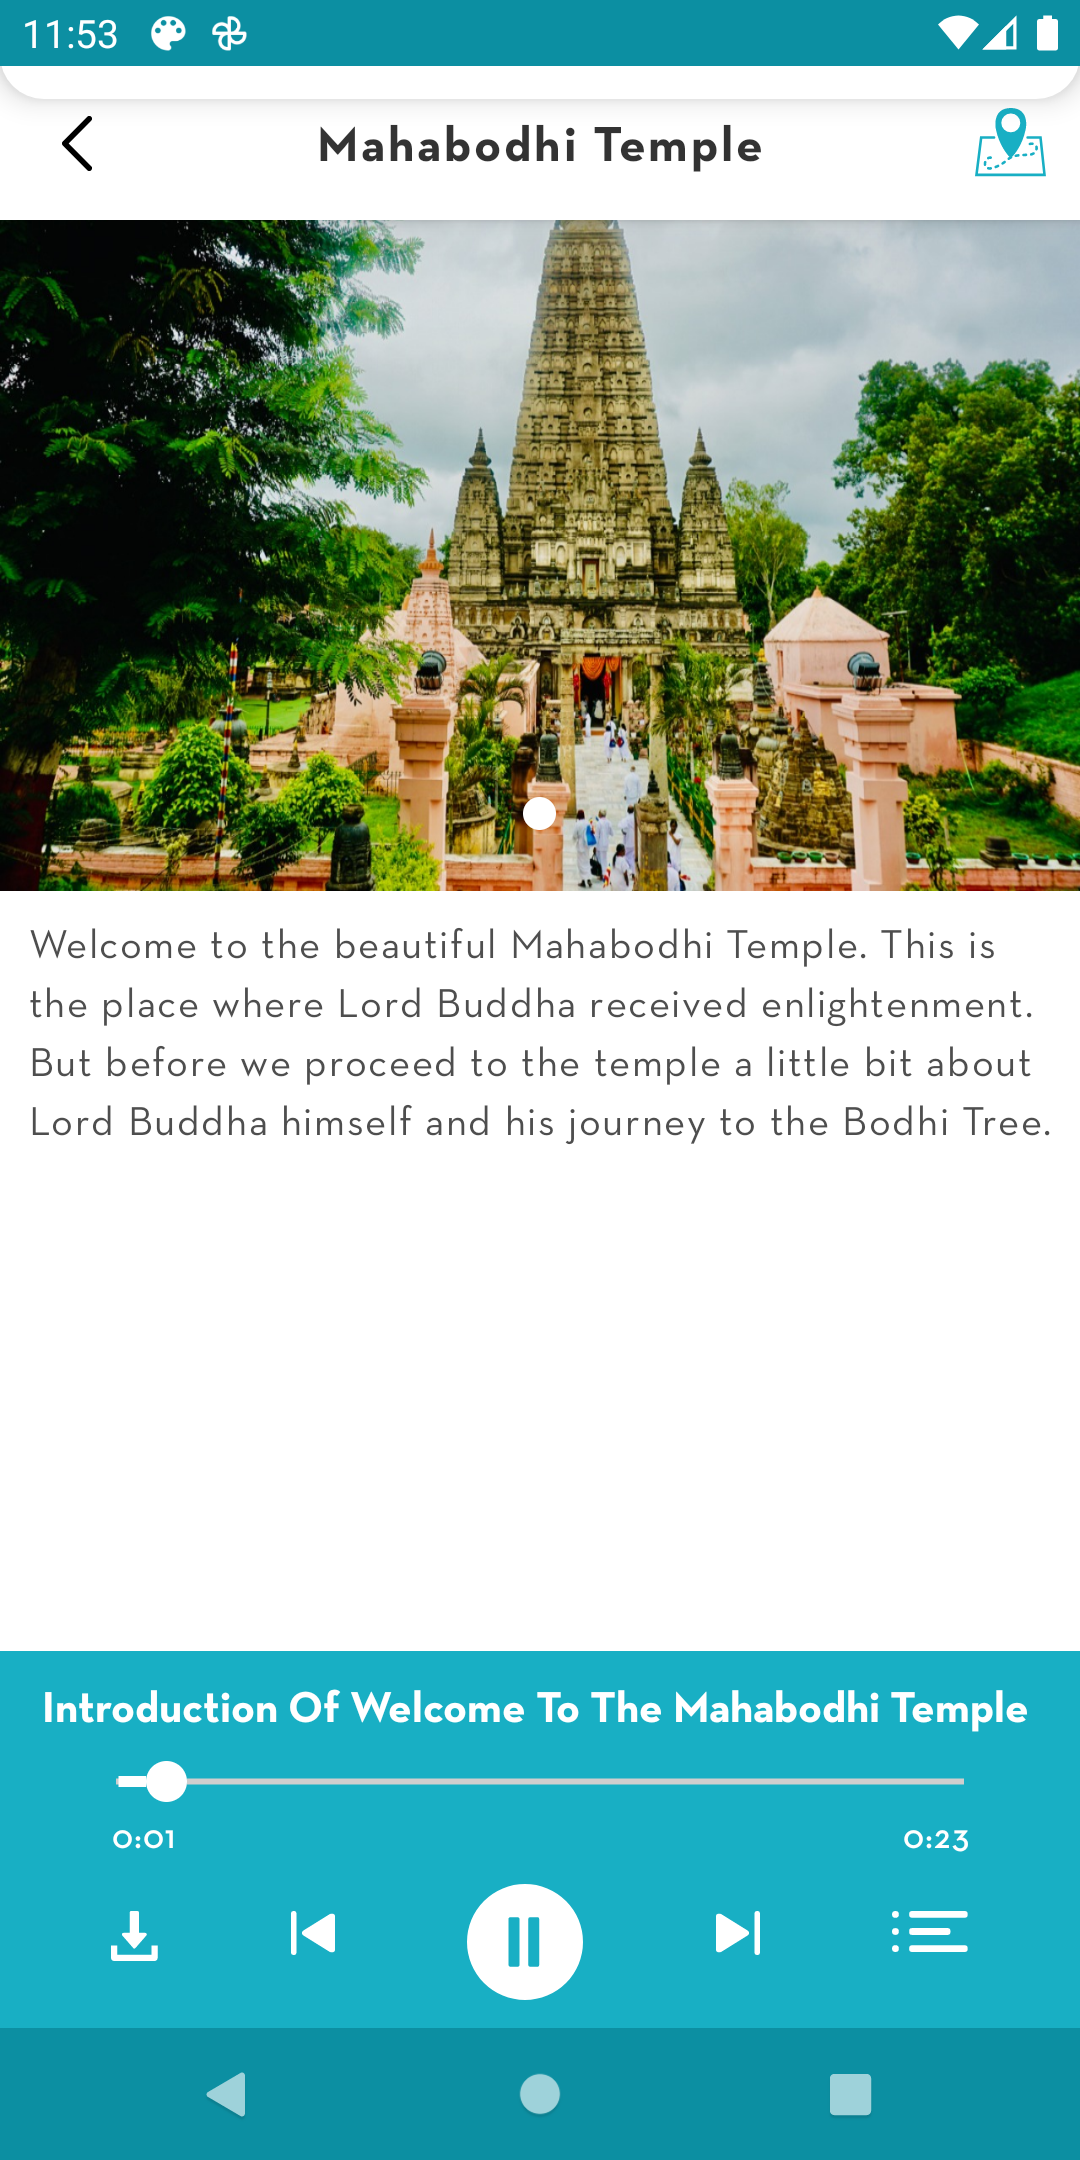 Mahabodhi Temple tour